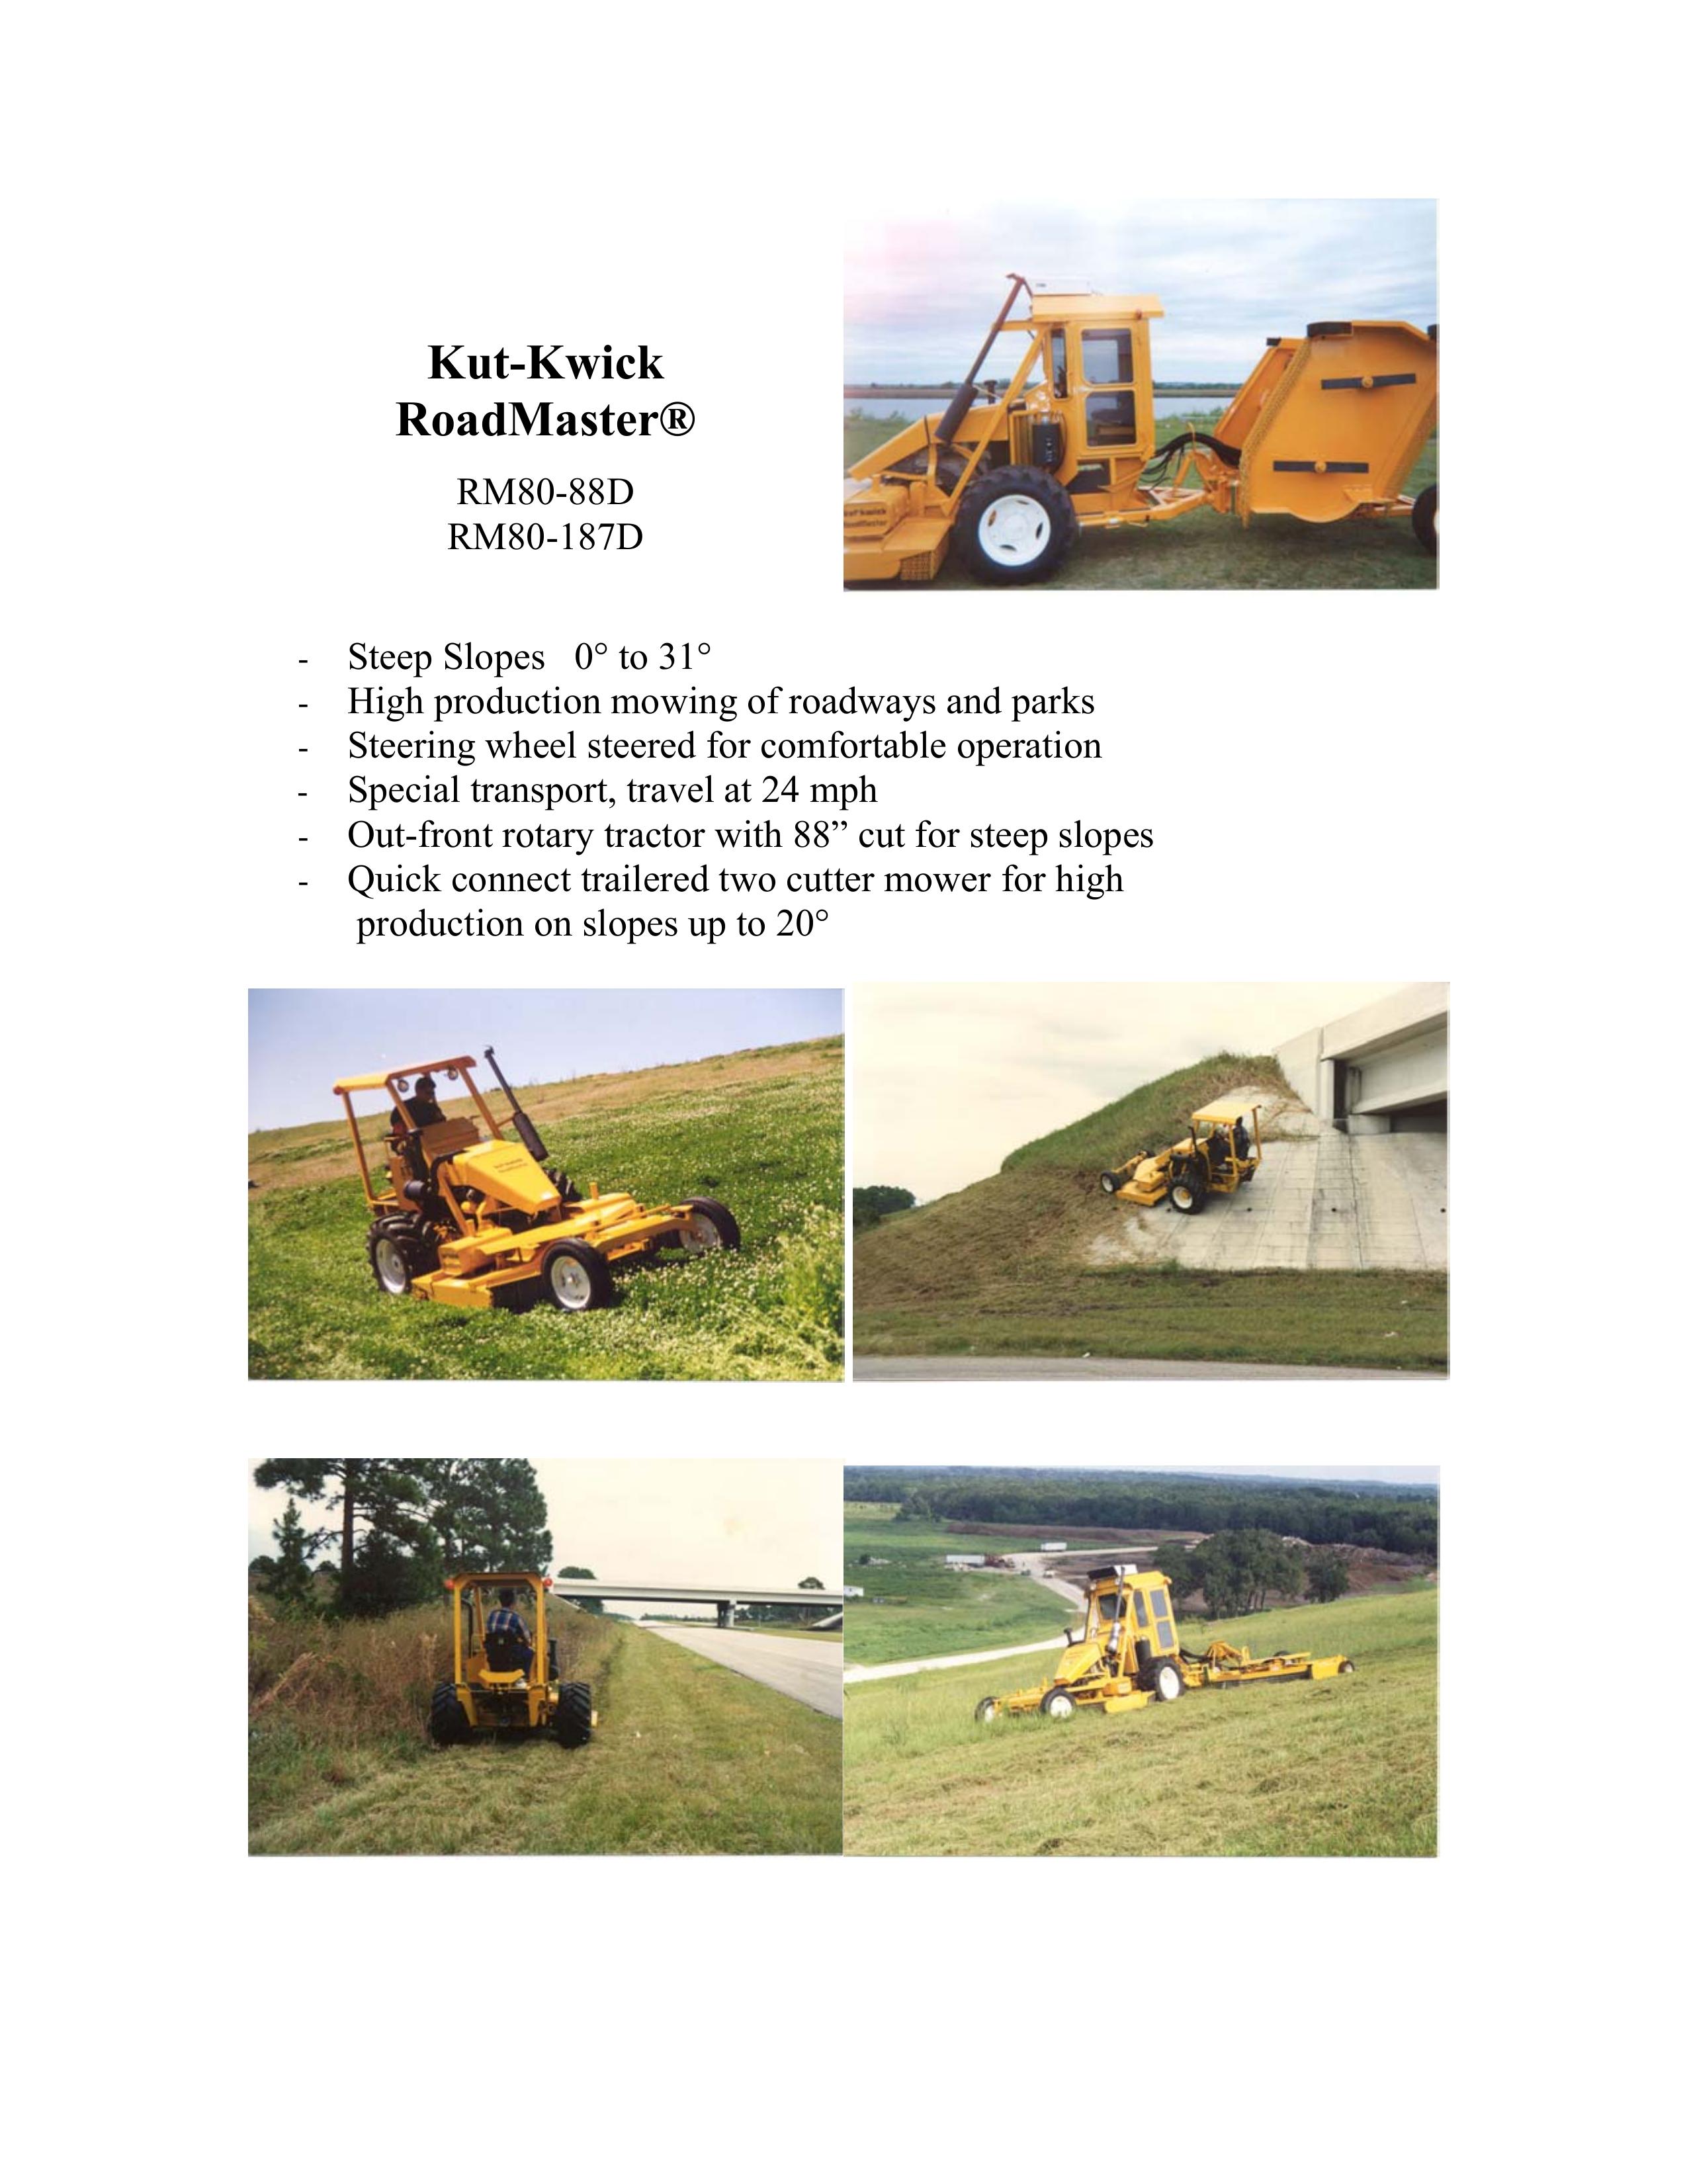 Kut-Kwick RM80-187D Lawn Mower User Manual